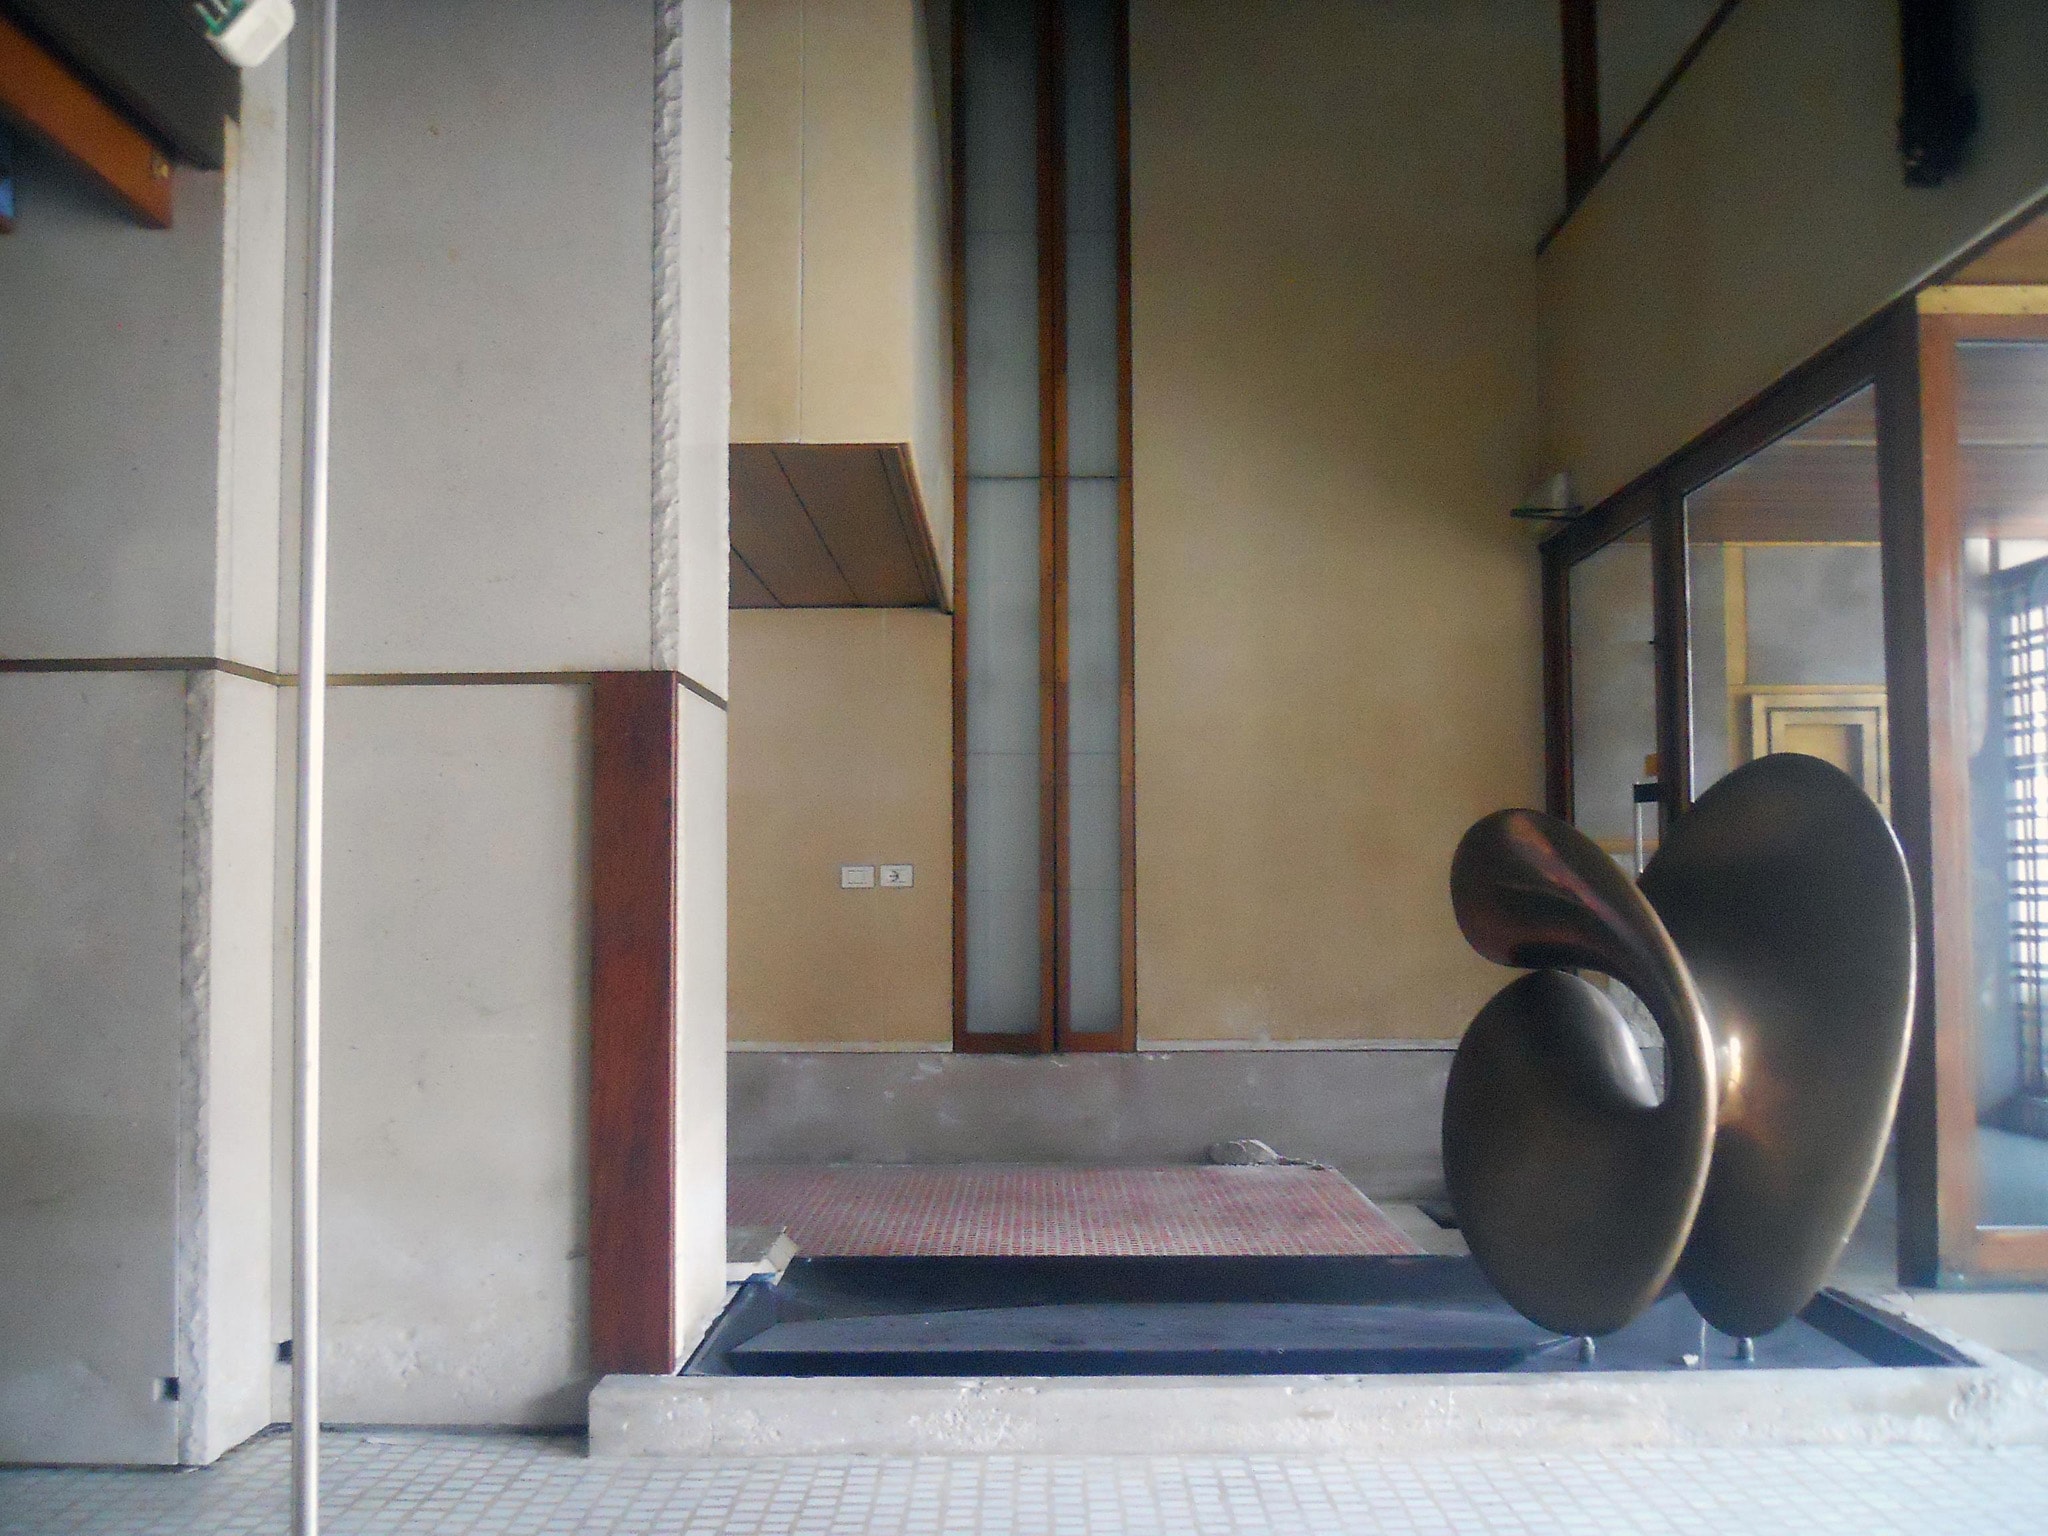 Veduta oggi del Negozio Olivetti di Venezia, interno, primo piano, a destra scultura Nudo al sole (1956) di Alberto Viani